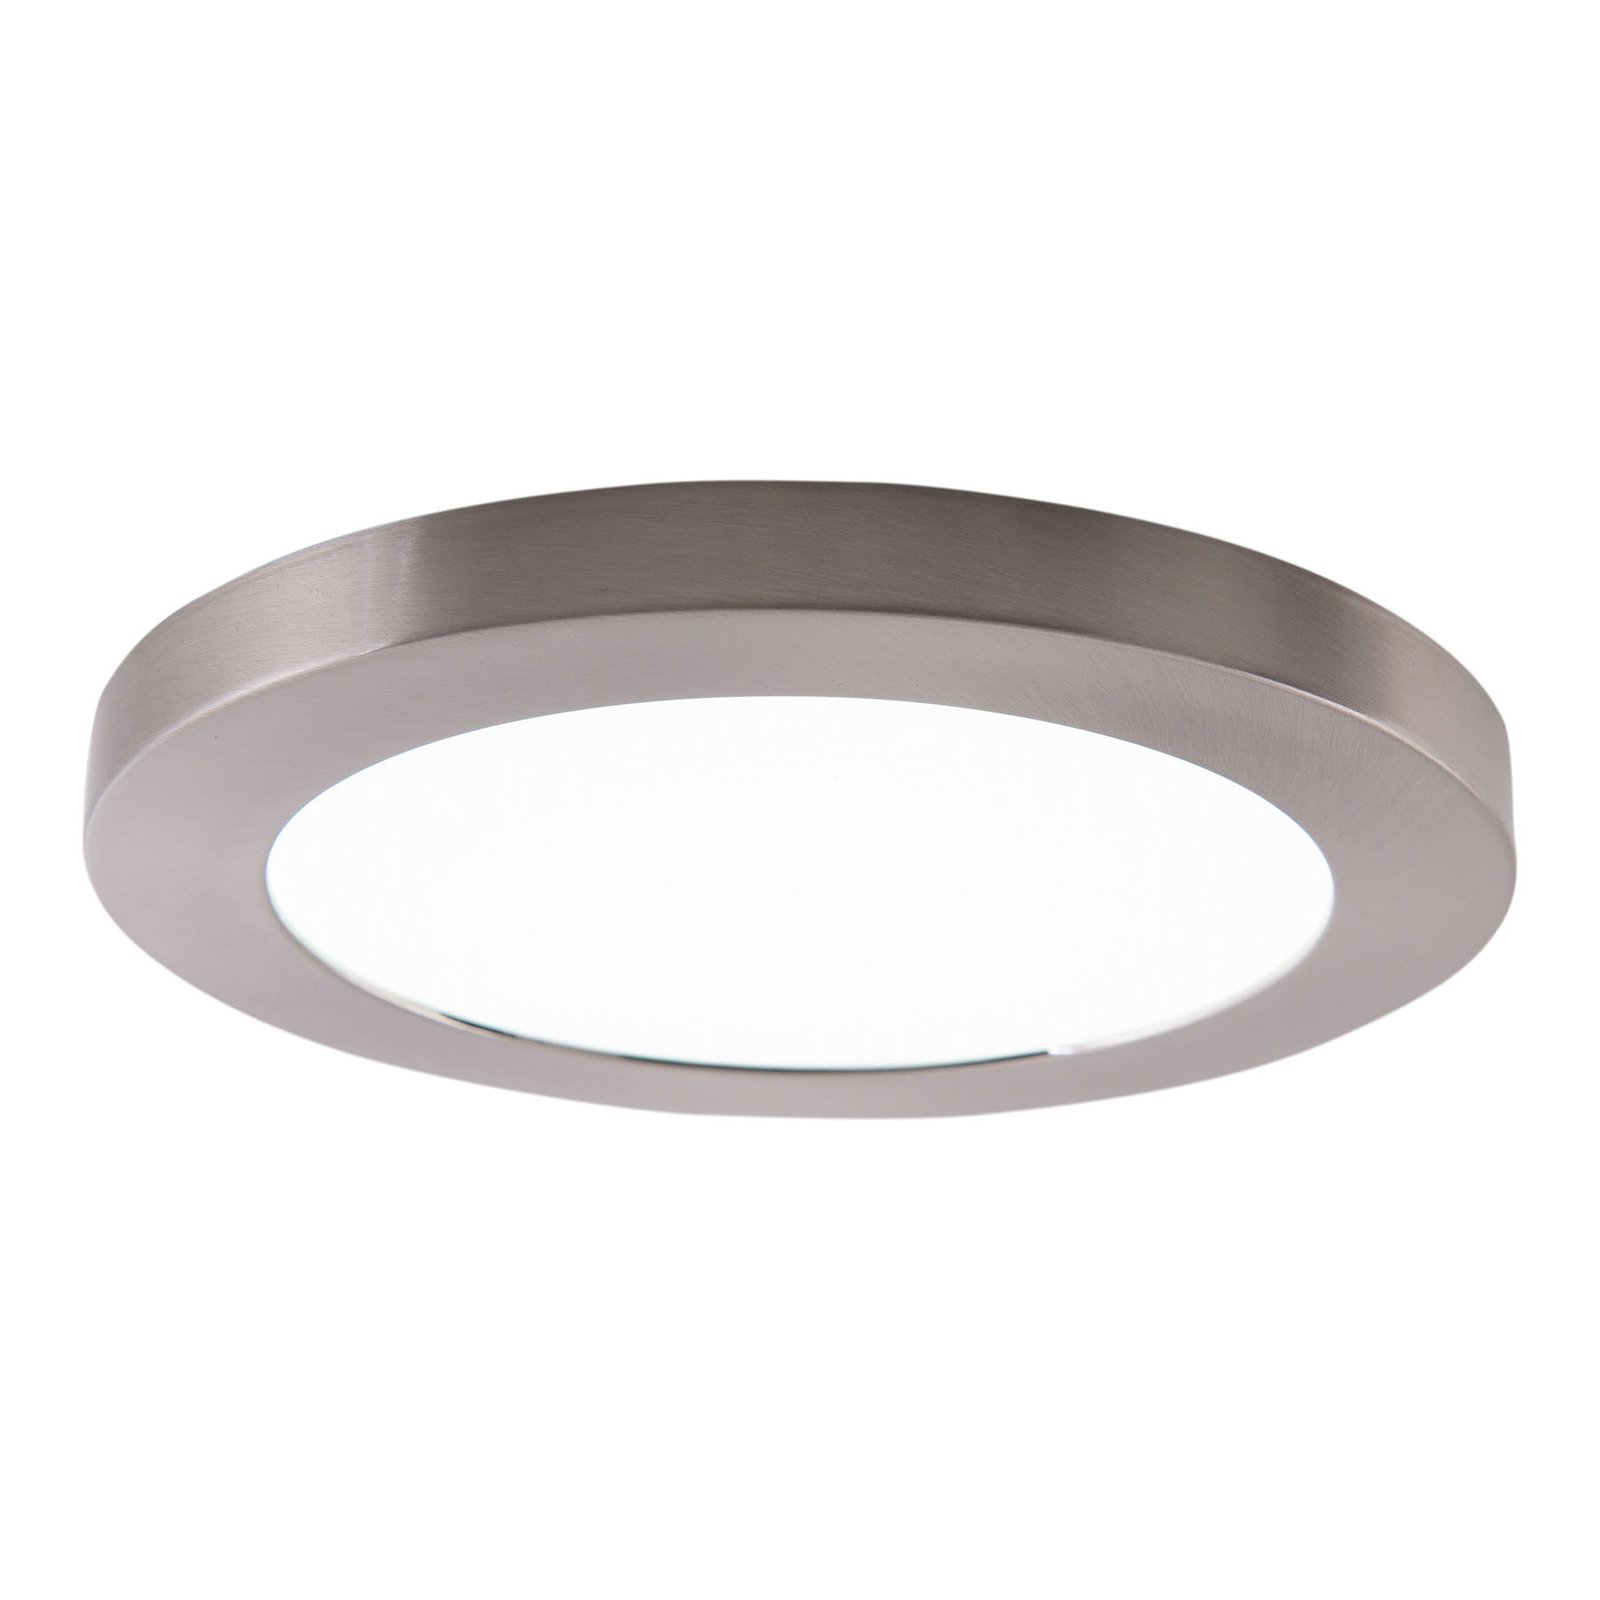 LED stropní světlo Bonus magnetický kruh Ø 22,5 cm